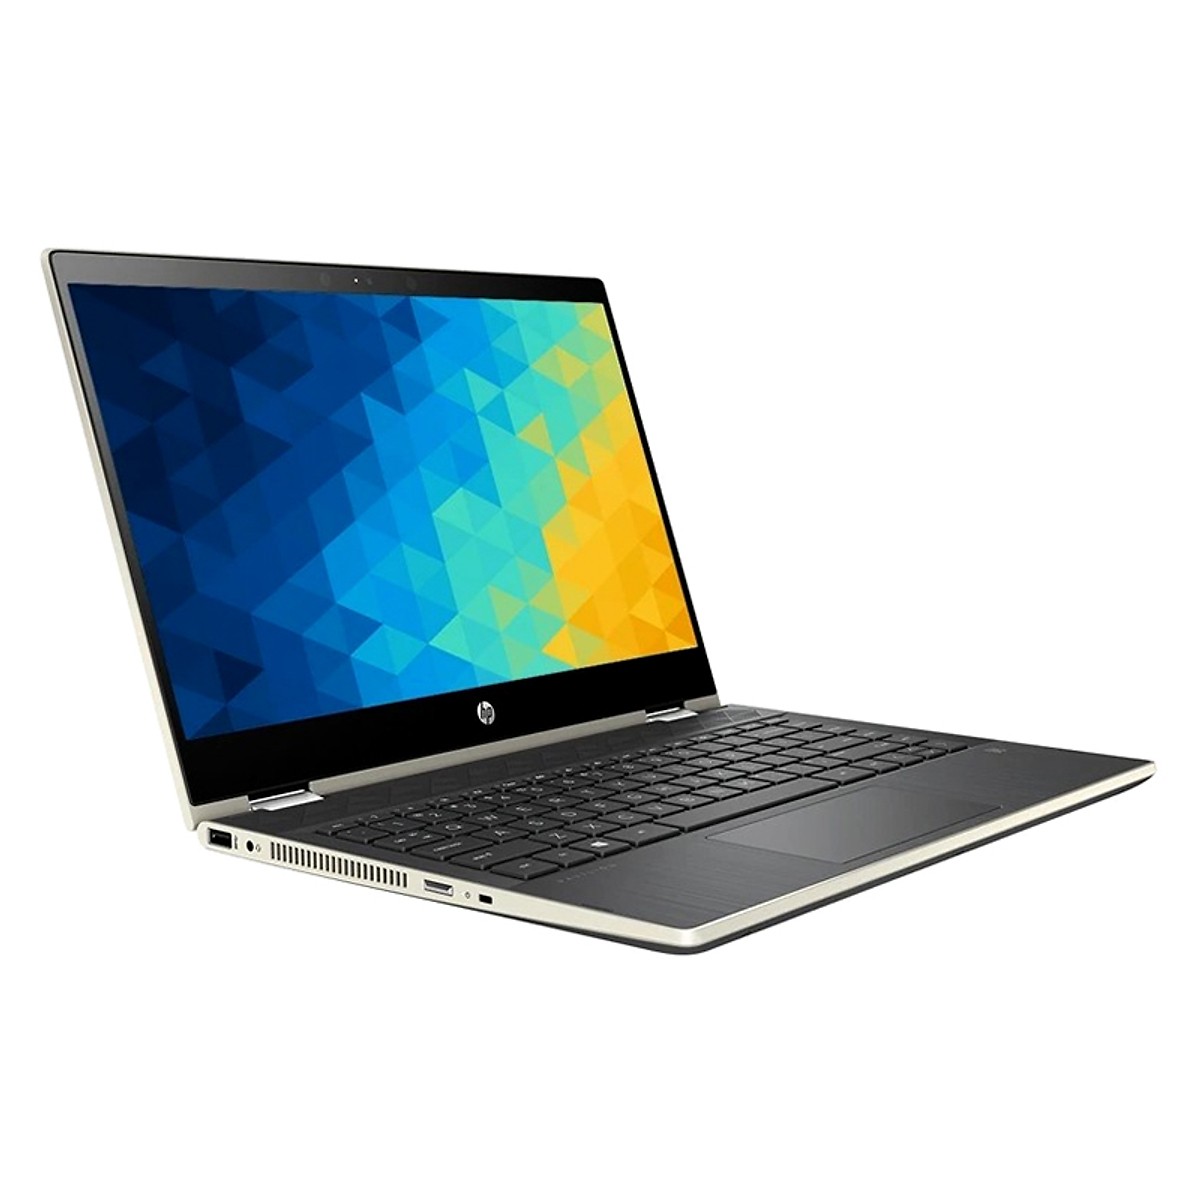 Laptop HP Pavilion x360 14-dh0103TU 6ZF24PA (i3-8145U/4Gb/1Tb HDD/14 TouchScreen/VGA ON/Win10/Gold/Pen)